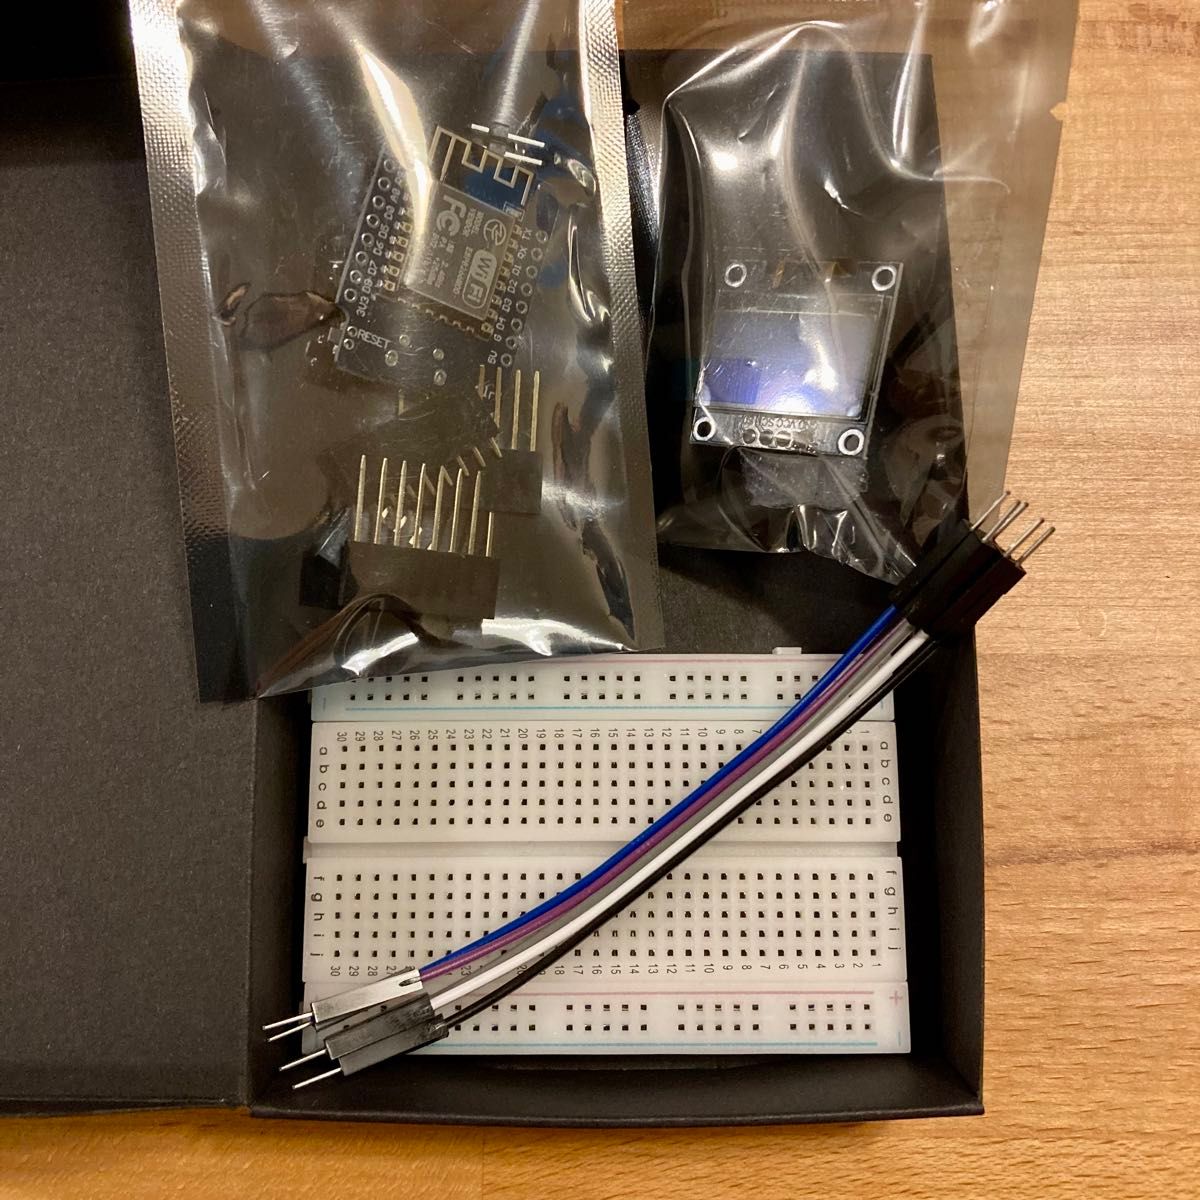 【新品】Arduino D1 Mini OLED プログラミング 電子工作 7